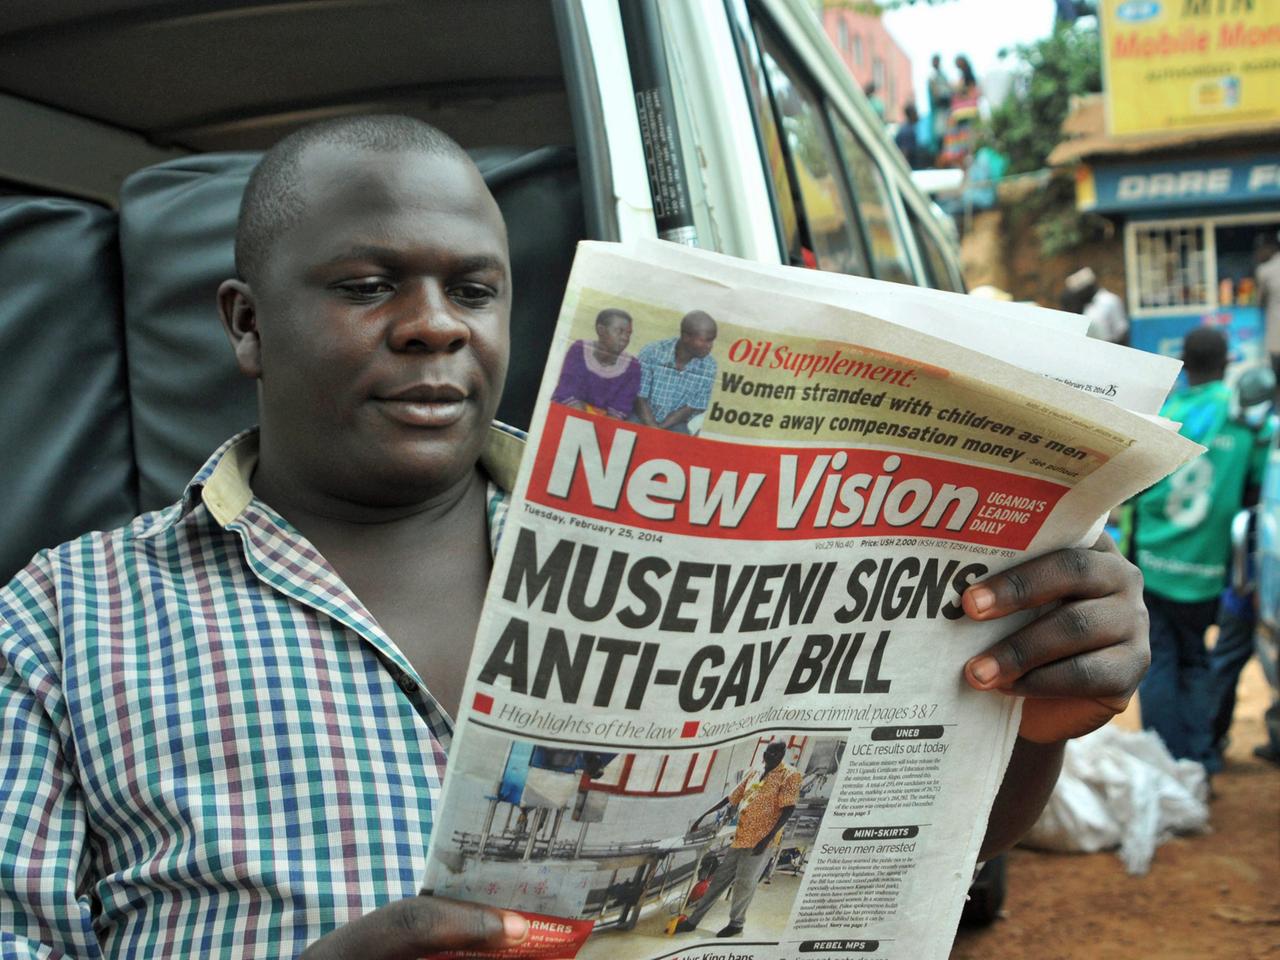 Mann liest eine Zeitung vom 25.02.2014 mit der Schlagzeile "Museveni signs anti-gay bill". Am 24.02.2014 hatte Ugandas Präsident Yoweri Museveni ein Anti-Schwulen-Gesetz unterschrieben.